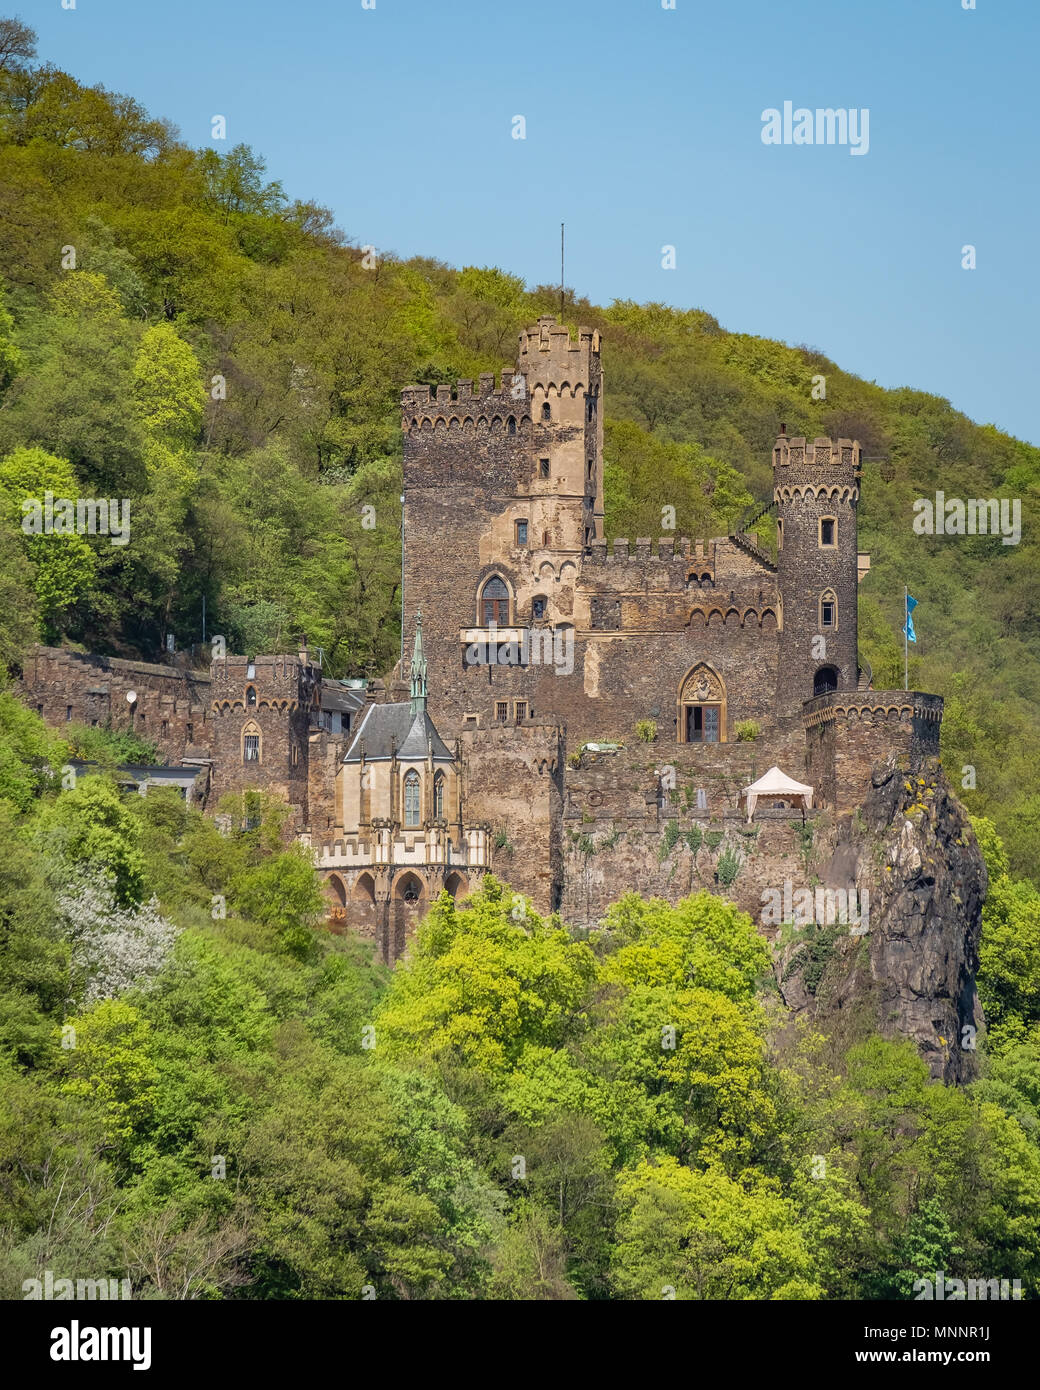 Château de Rheinstein est situé au sommet d'un éperon rocheux dominant le Rhin en Allemagne. Construit au 9e siècle, il est l'un des plus anciens châteaux de Banque D'Images